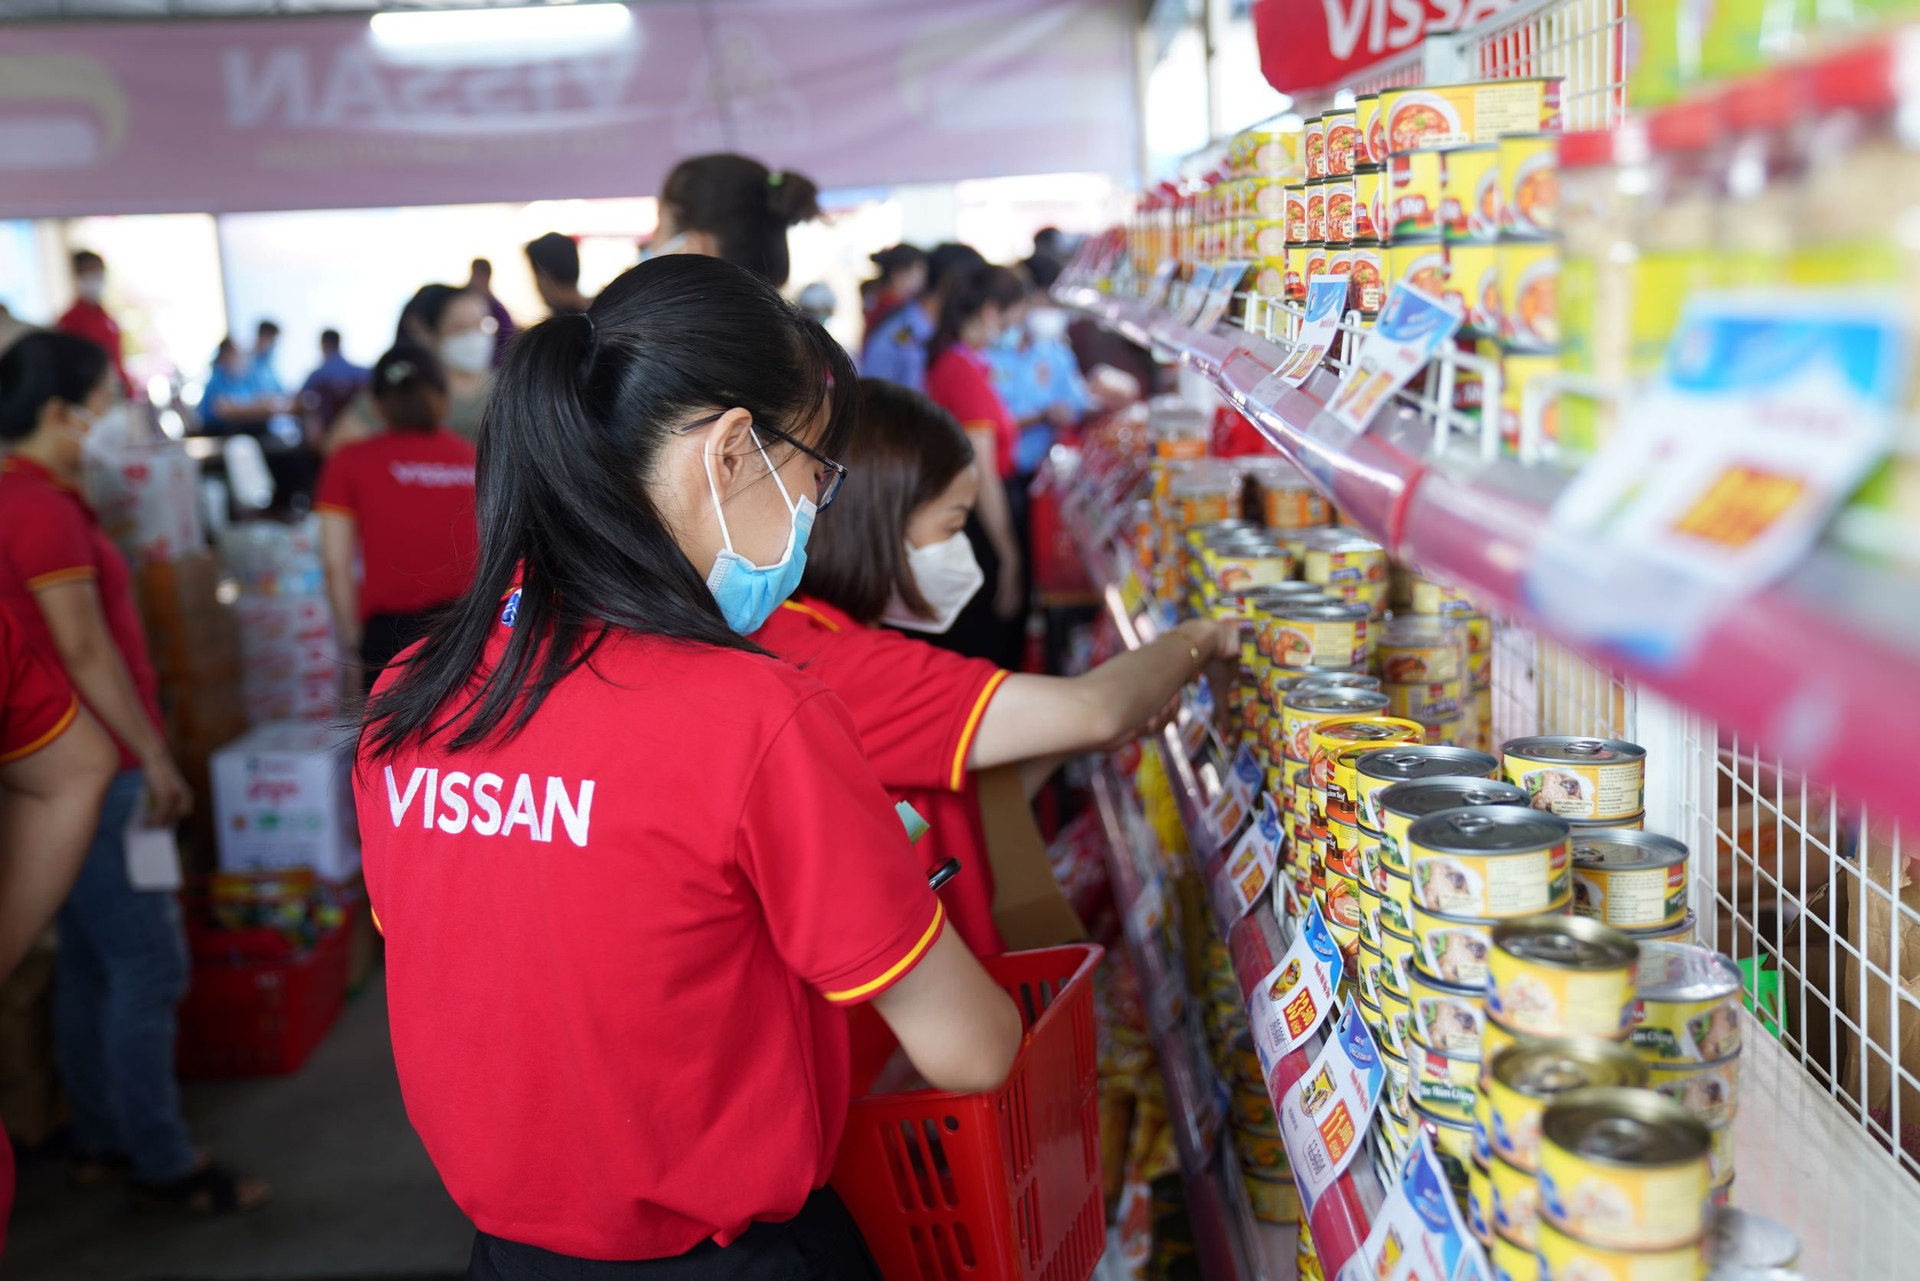 Sau 3 năm sụt giảm, doanh thu Vissan hồi phục quý 4/2022, lấy lại mốc nghìn tỷ - Ảnh 1.